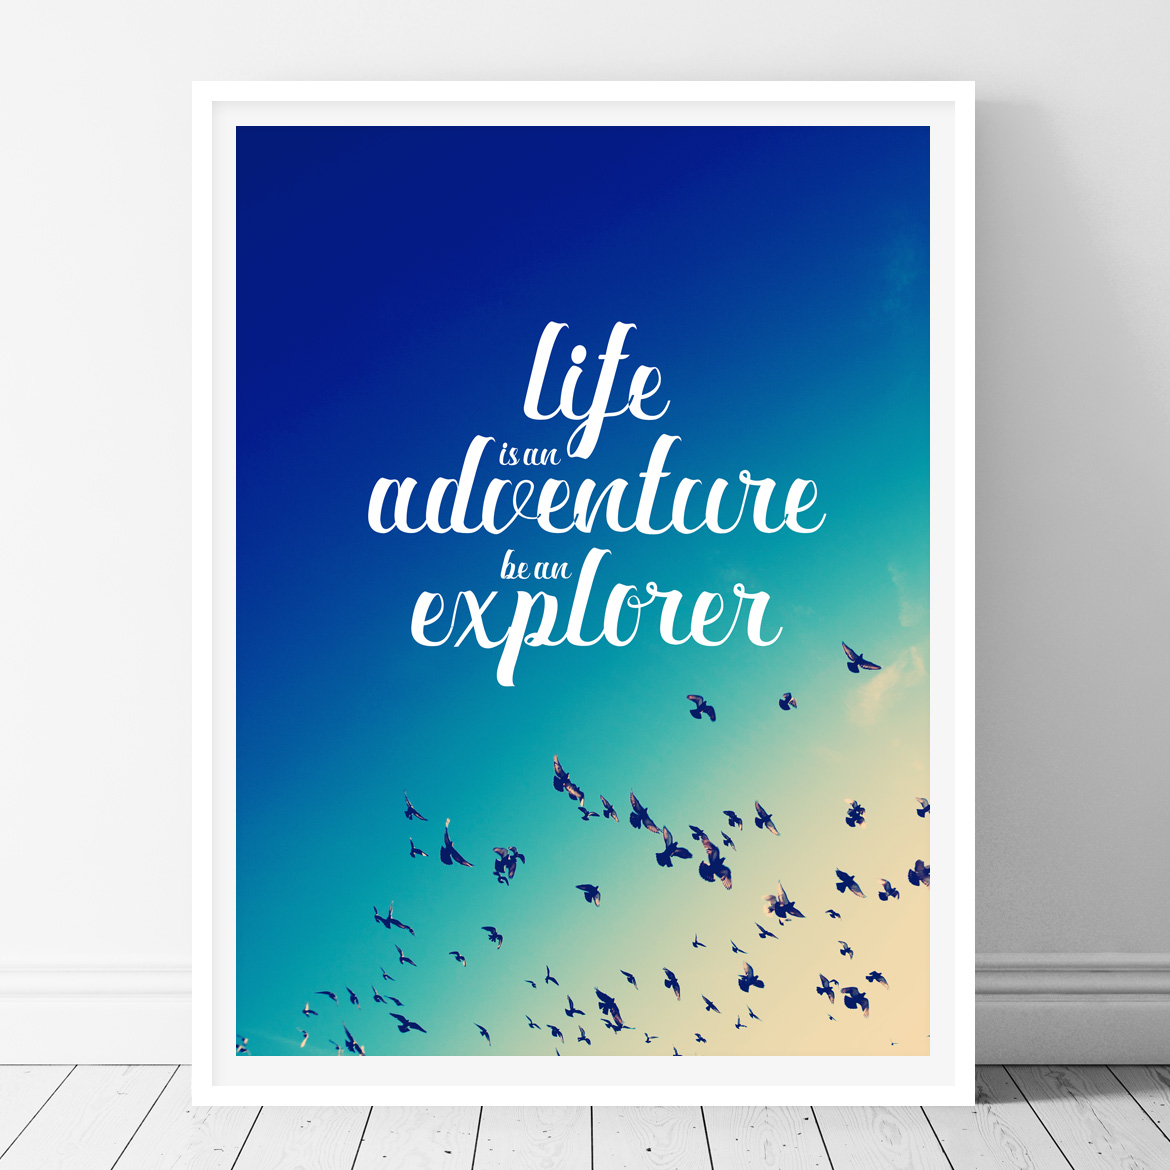 Life is an adventure, be an explorer